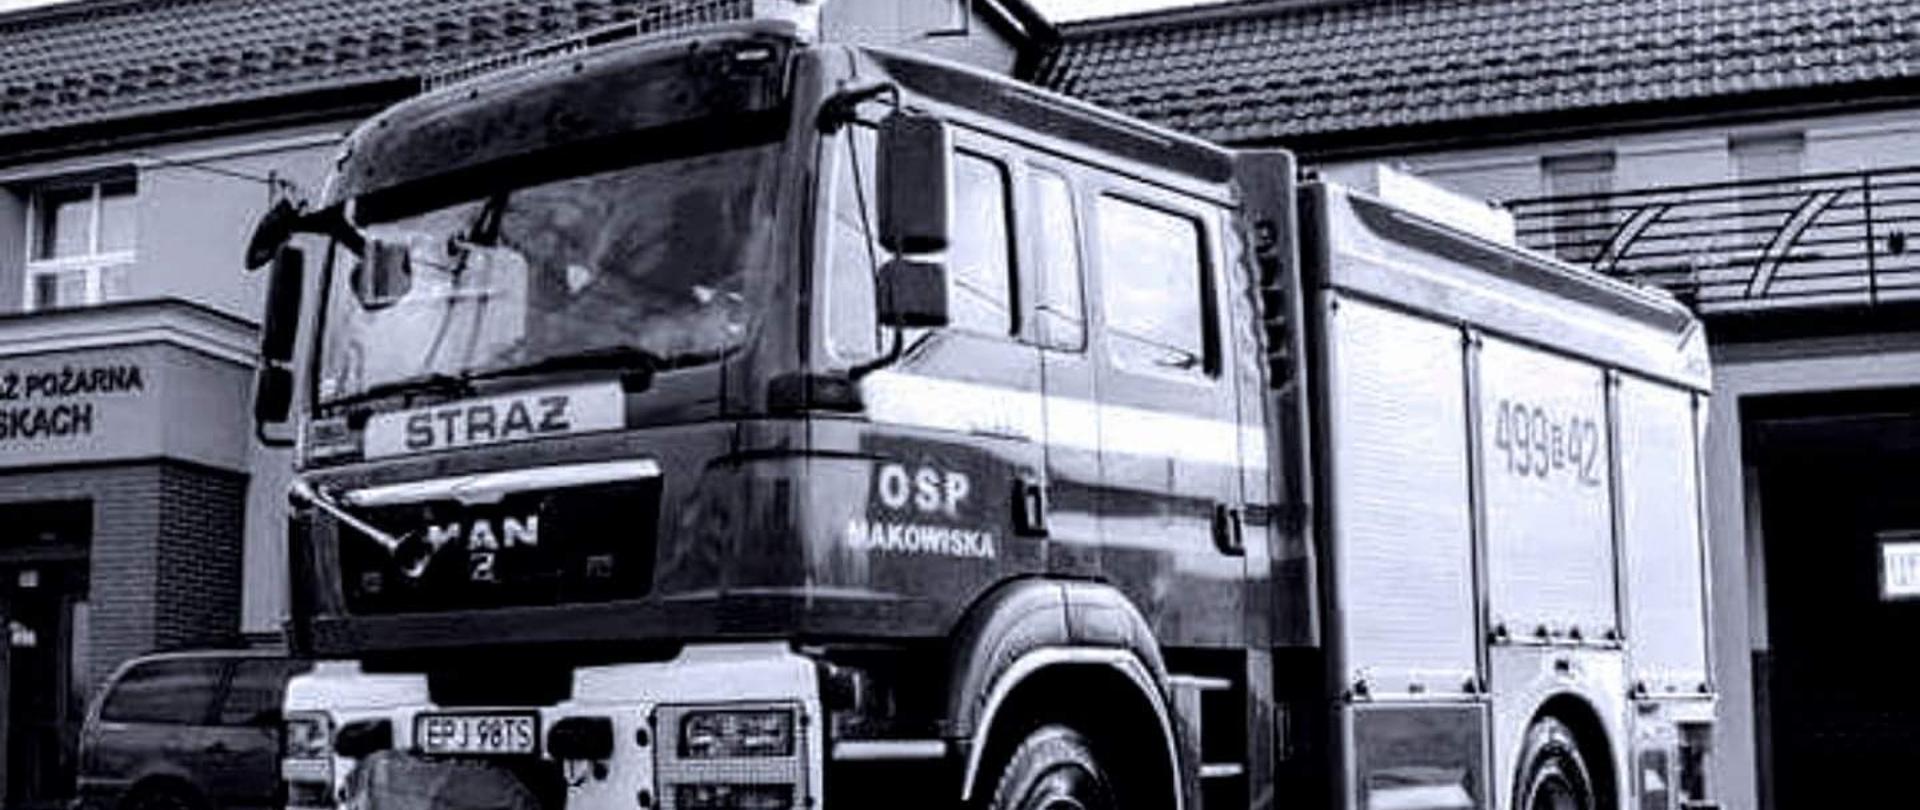 Średni samochód ratowniczo-gaśniczy OSP Makowiska